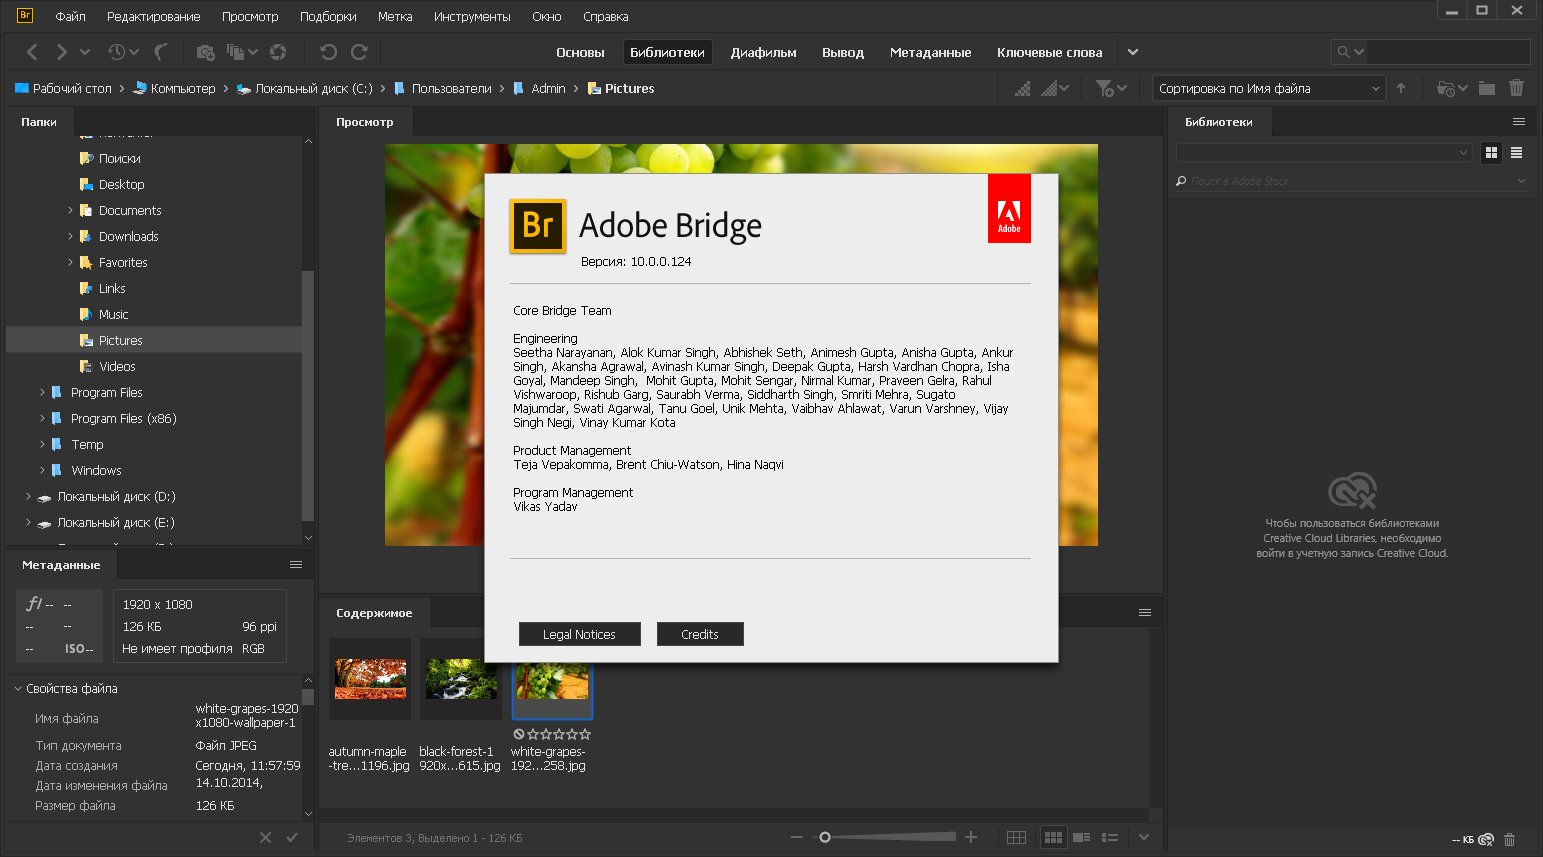 Adobe Bridge 2020 10.0.0.124 (2019) PC | Portable by XpucT